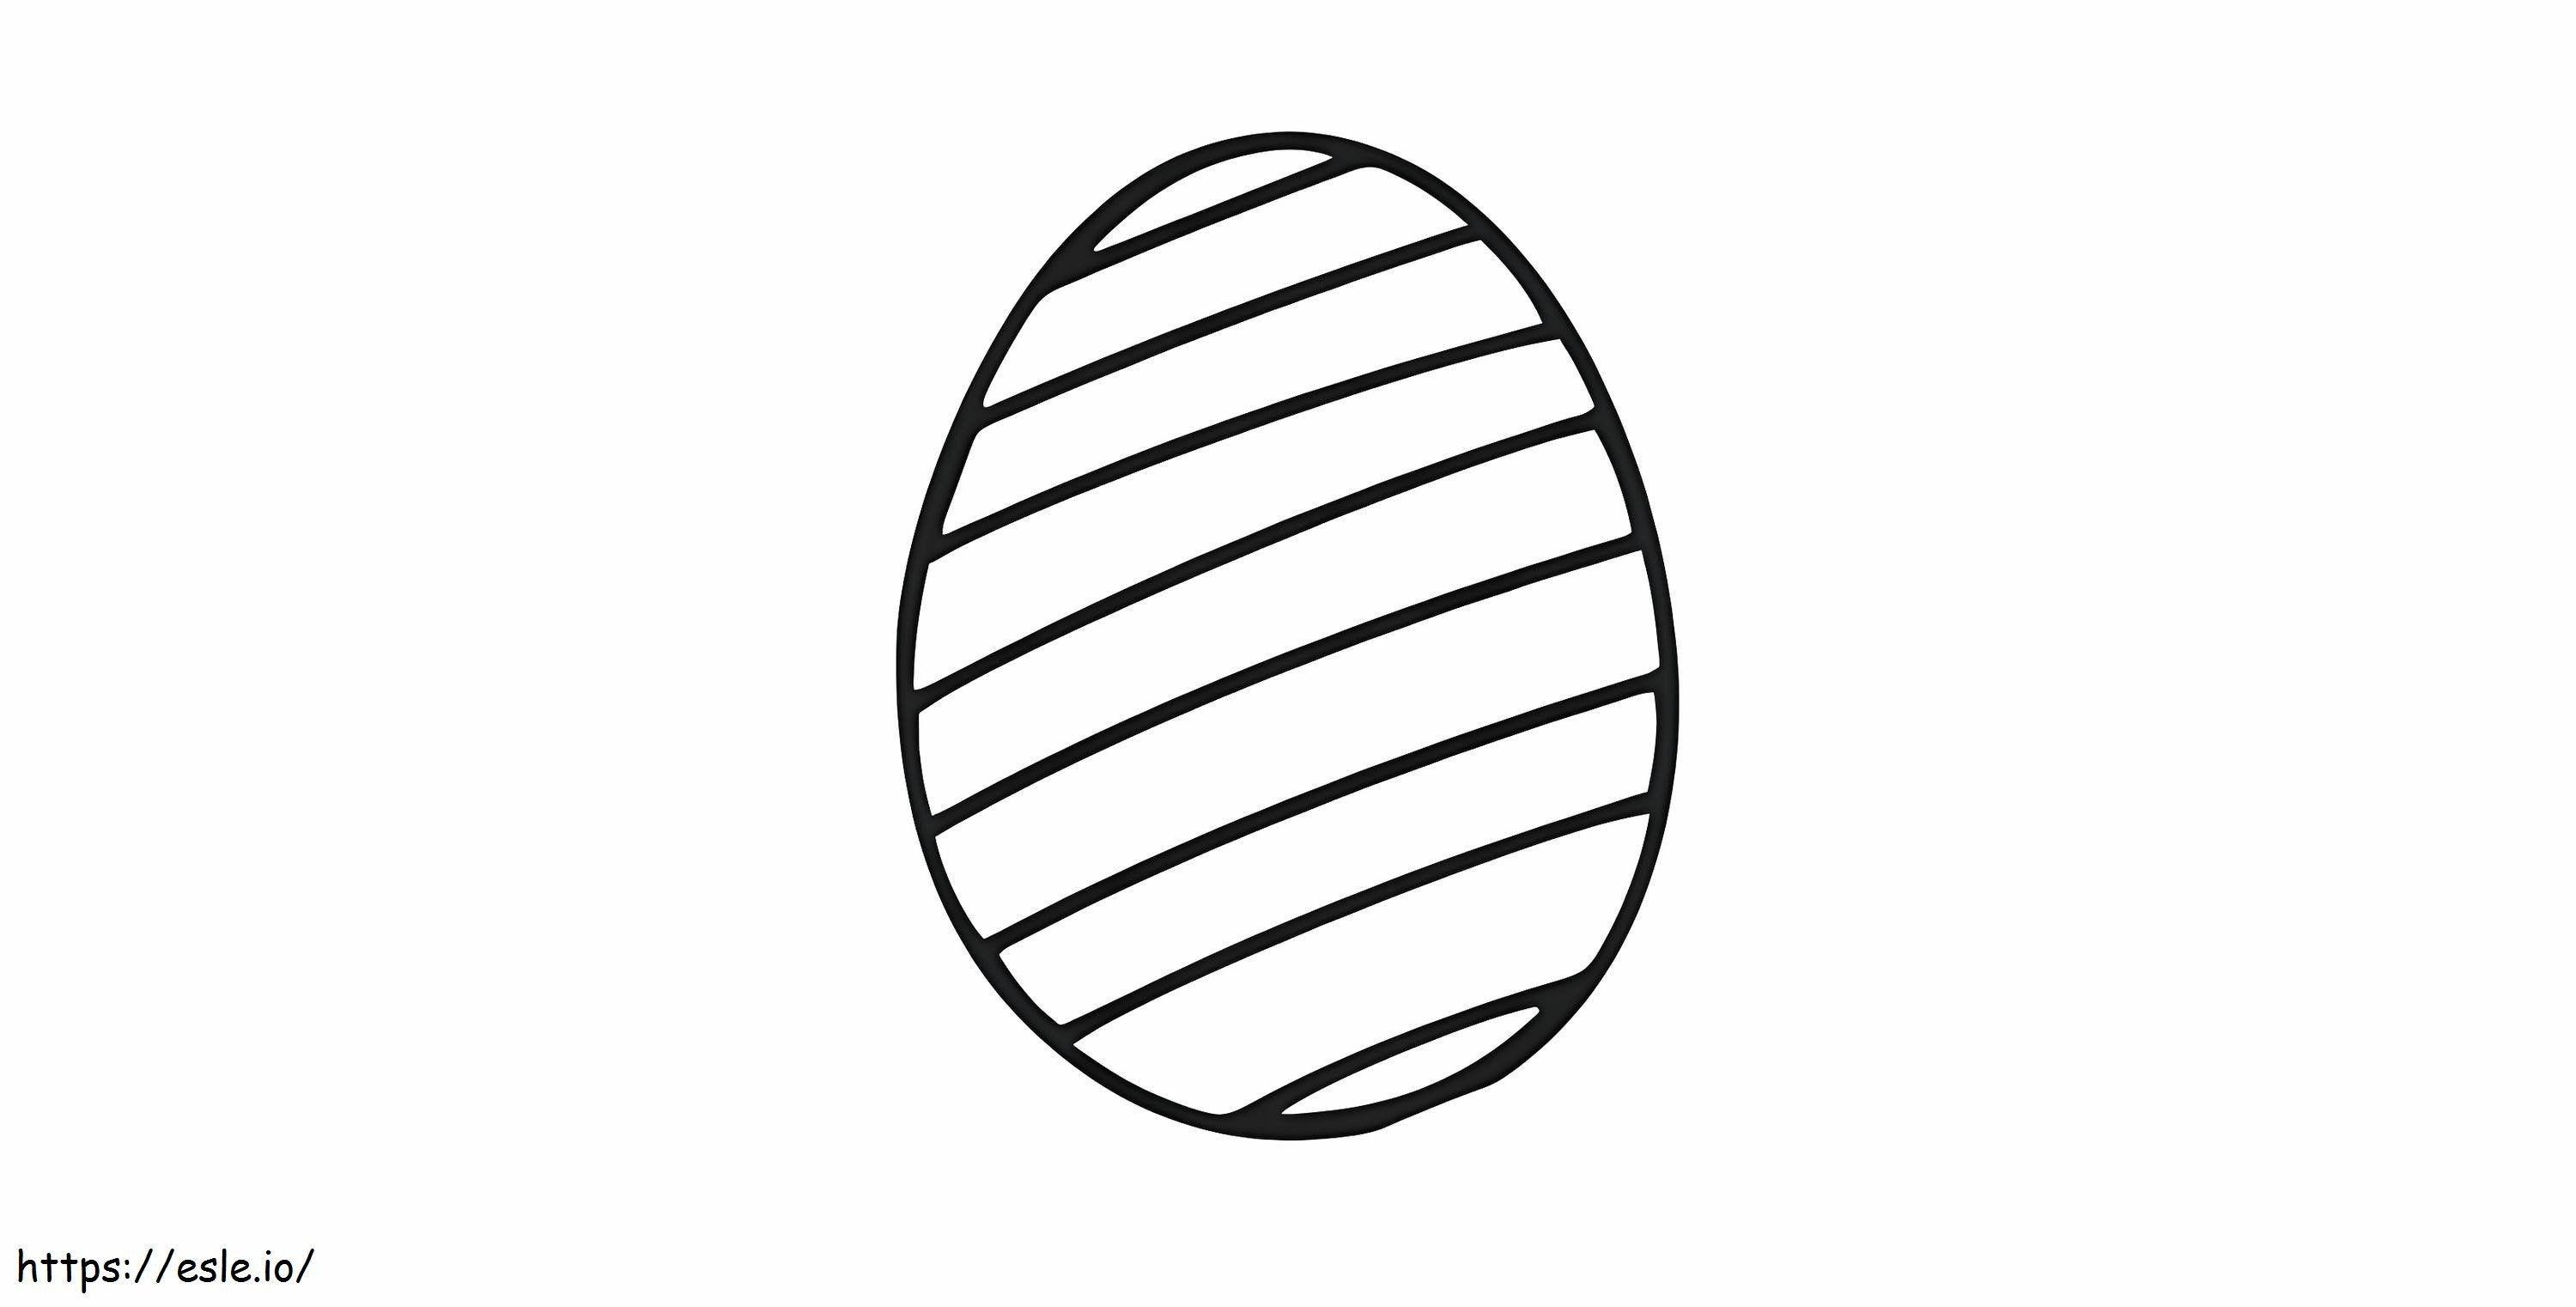 Gutes Ei ausmalbilder